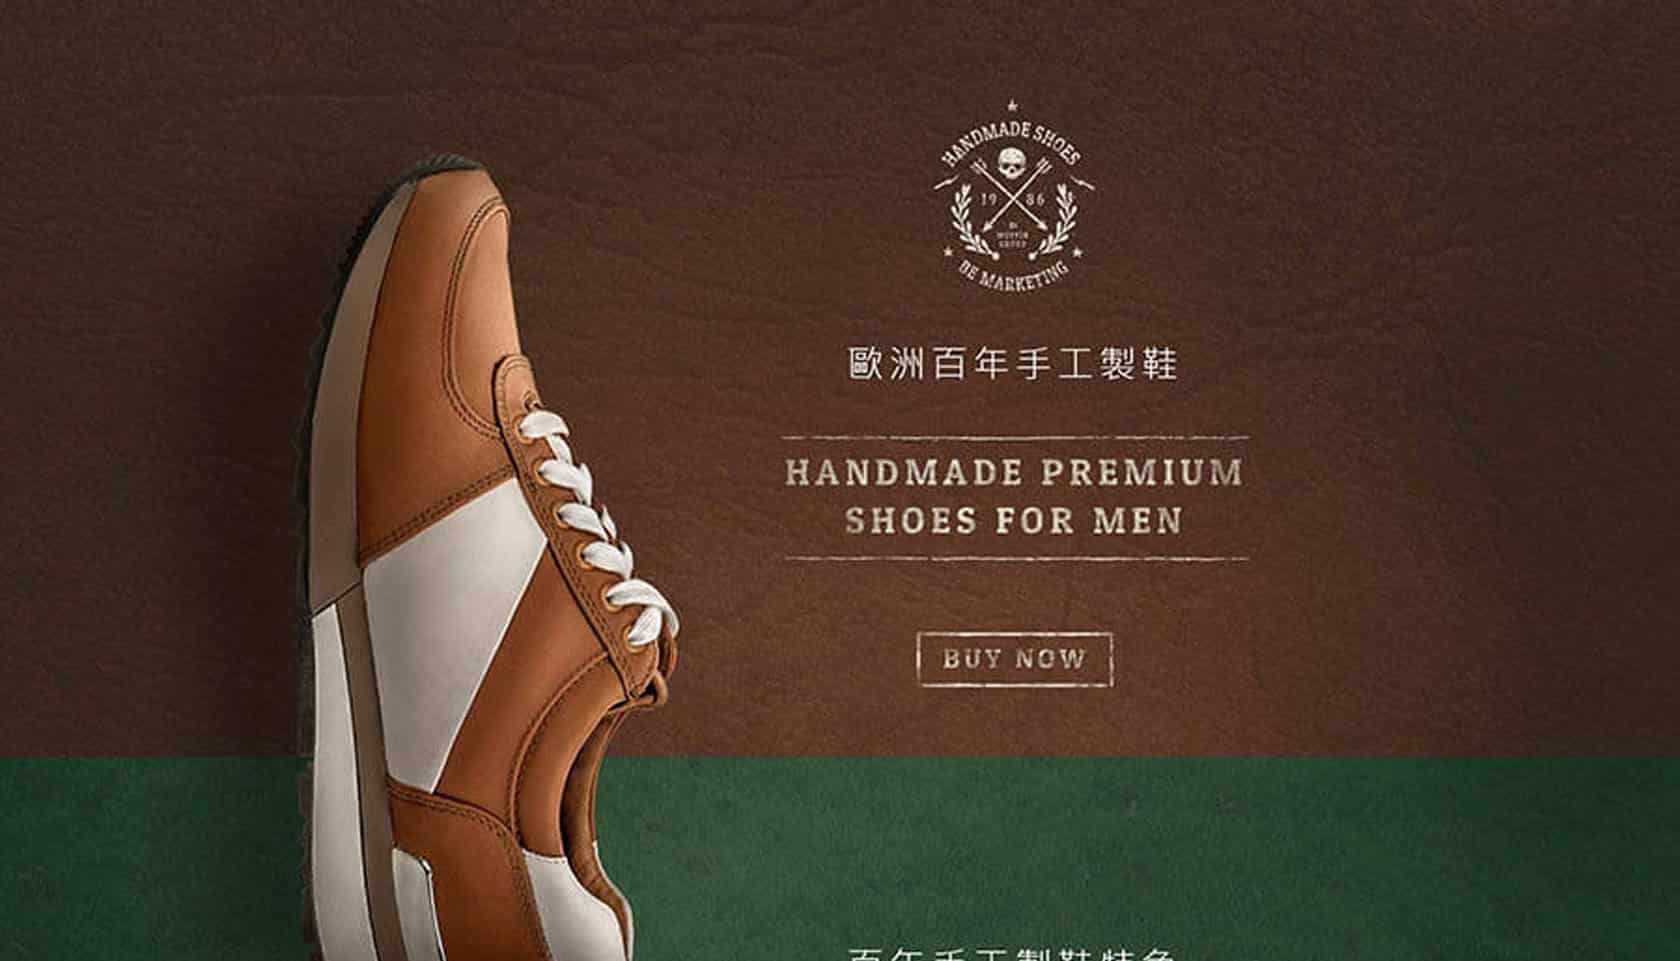 MB手工製鞋品牌網站